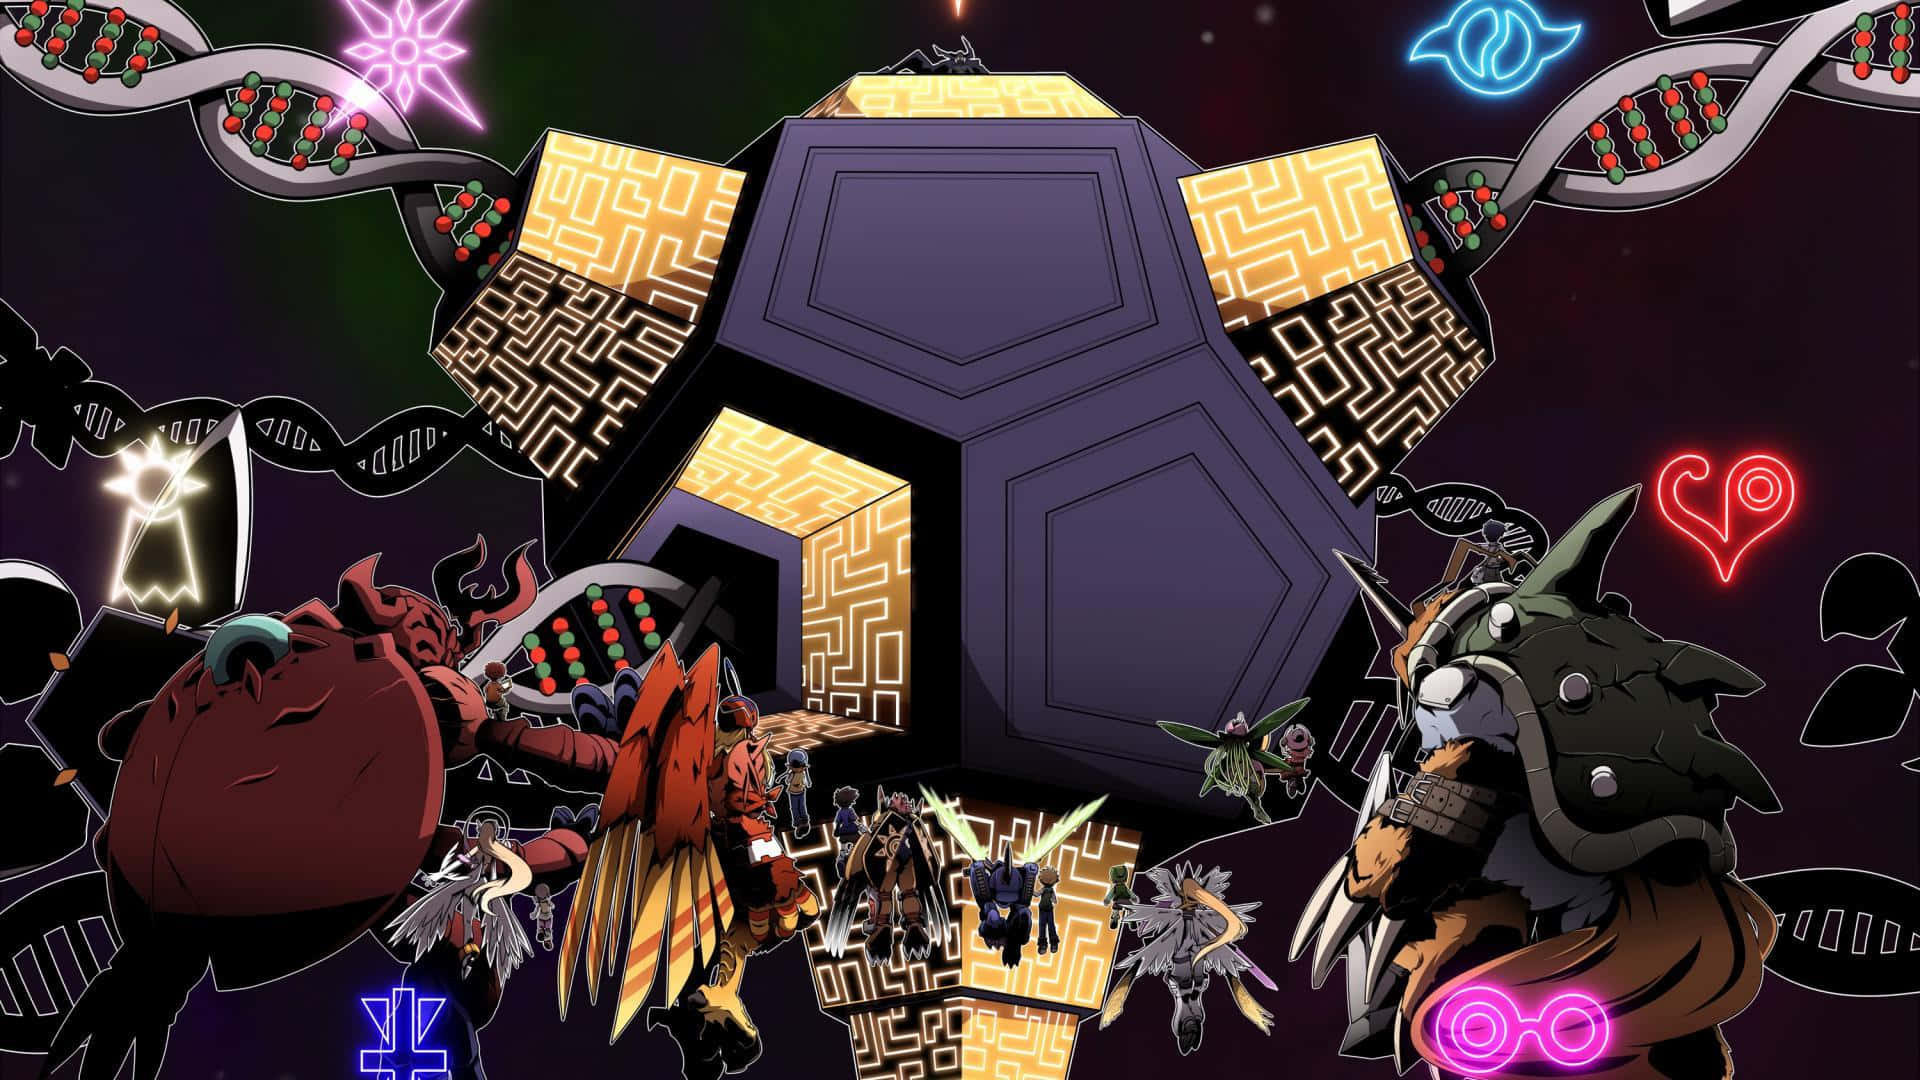 Billedeaf Tapet Med Digimon-tema